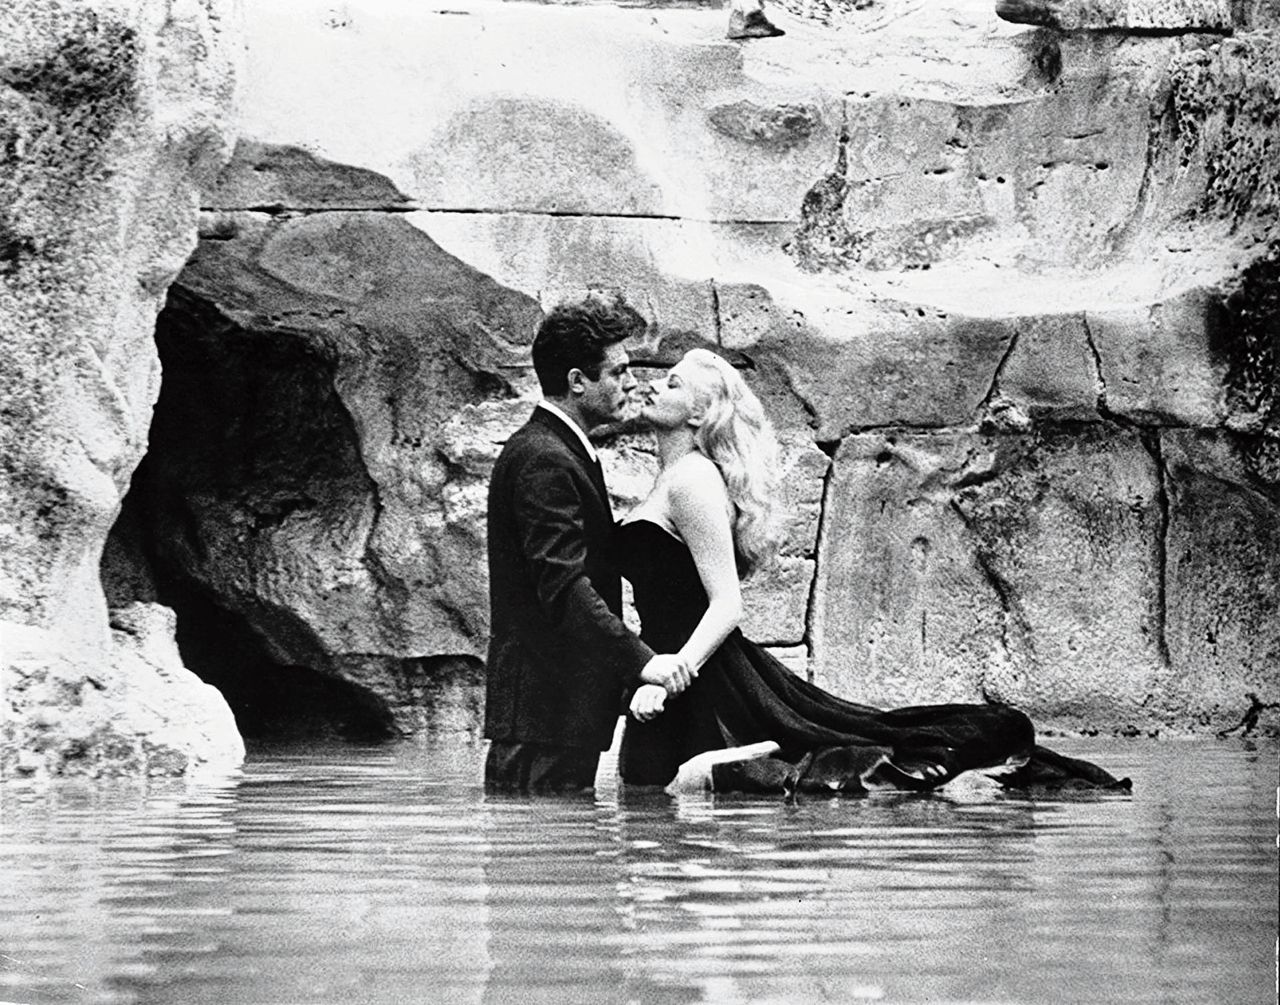 Mastroianni en Ekberg in Fellini’s film La dolce vita